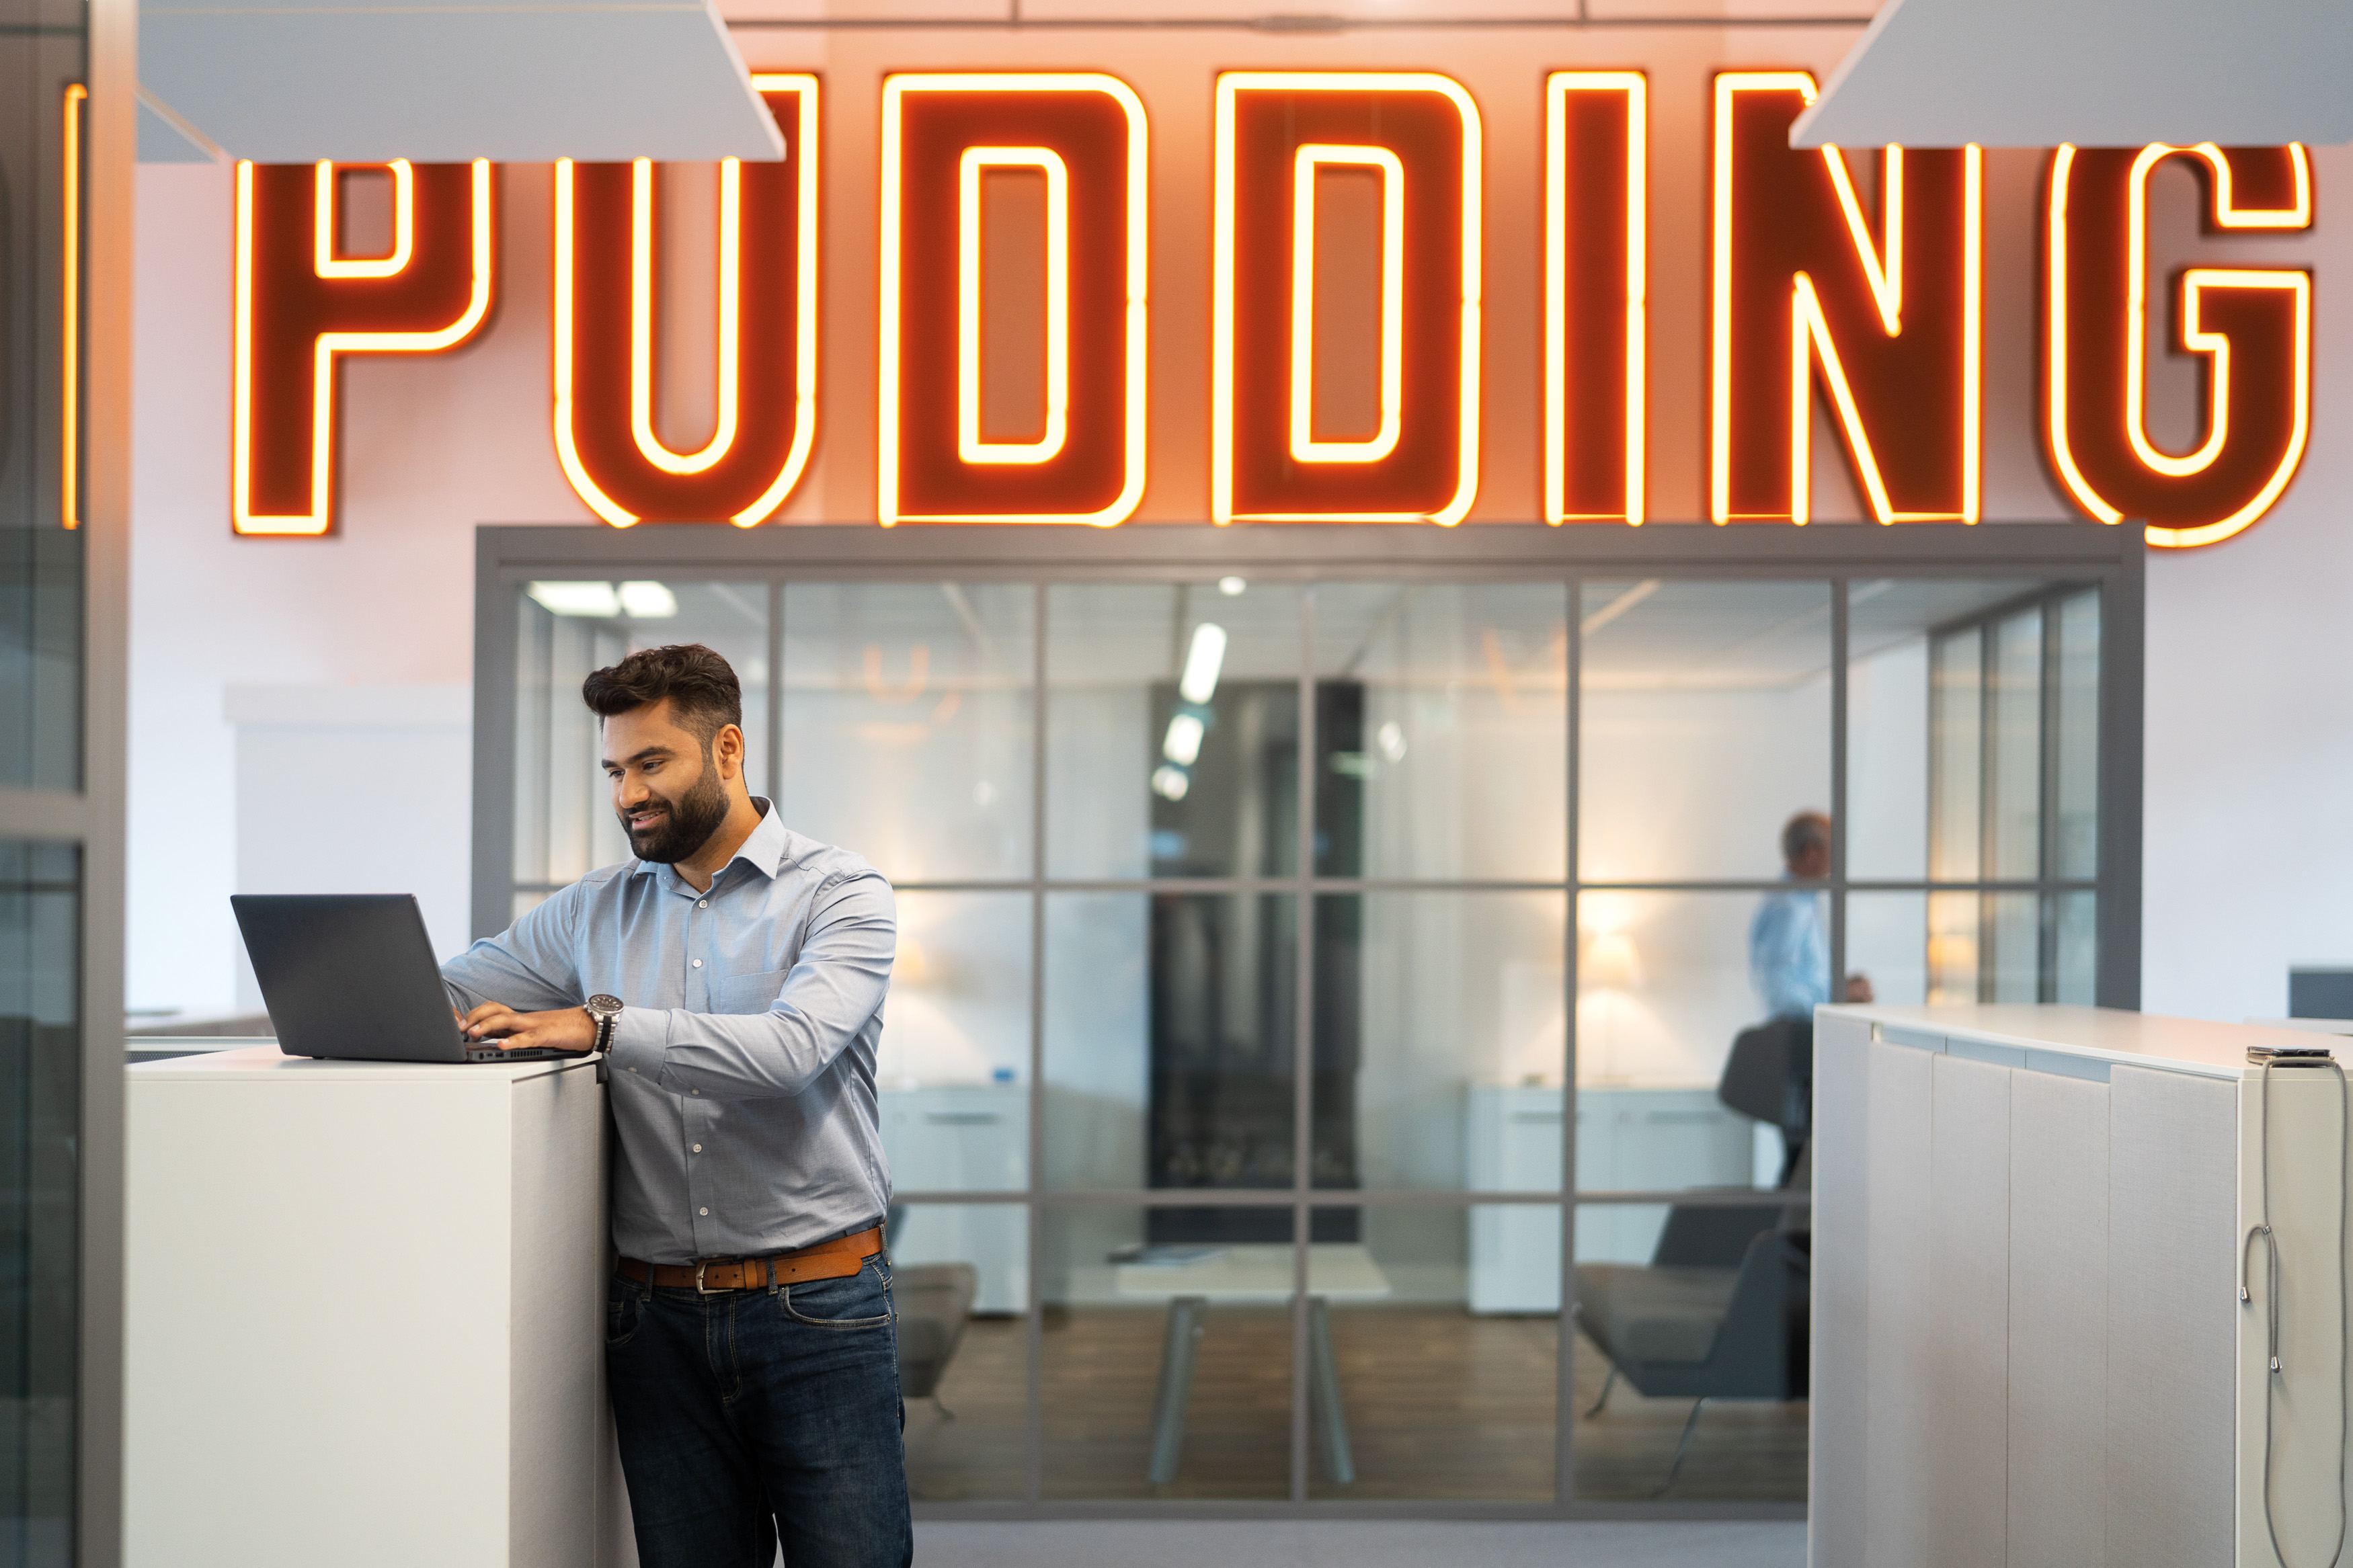 Mann arbeitet an einem Stehtisch. hinter ihm sieht man einen großen Schriftzug "Pudding"